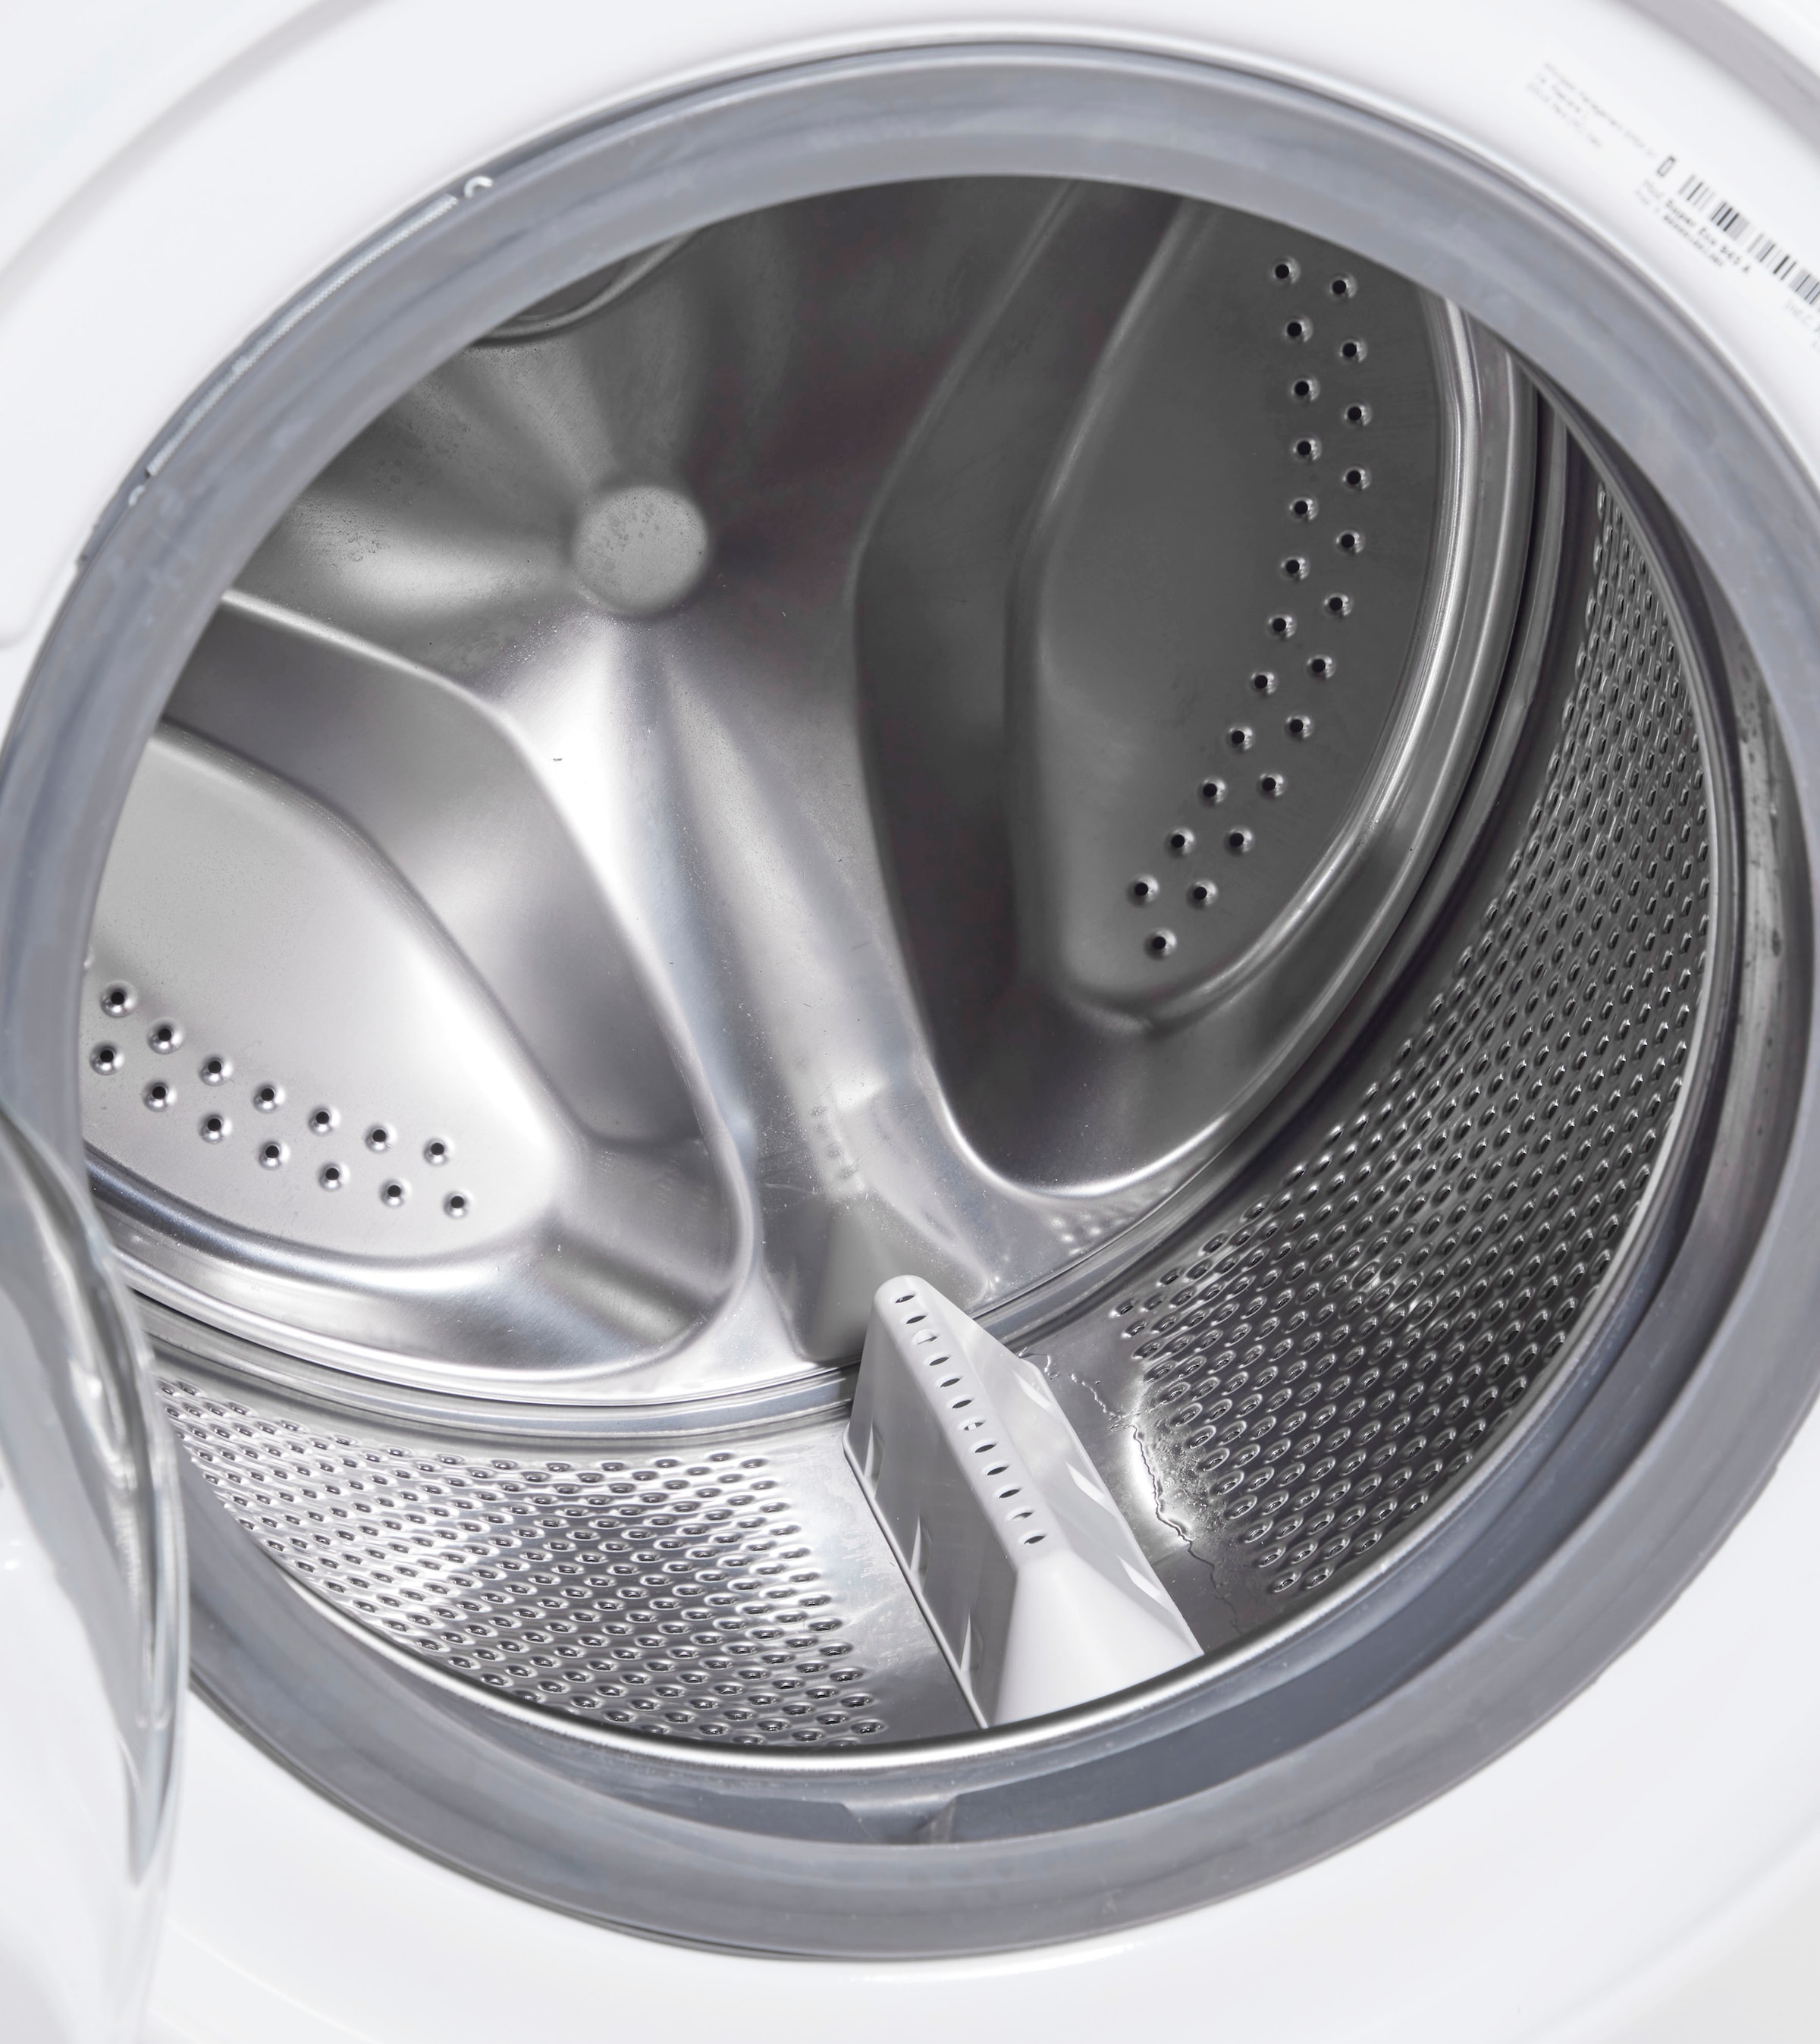 BAUKNECHT Waschmaschine, mit Jahren Eco 1400 945 Jahre Super 9 3 A, kg, Garantie 4 U/min, Herstellergarantie XXL